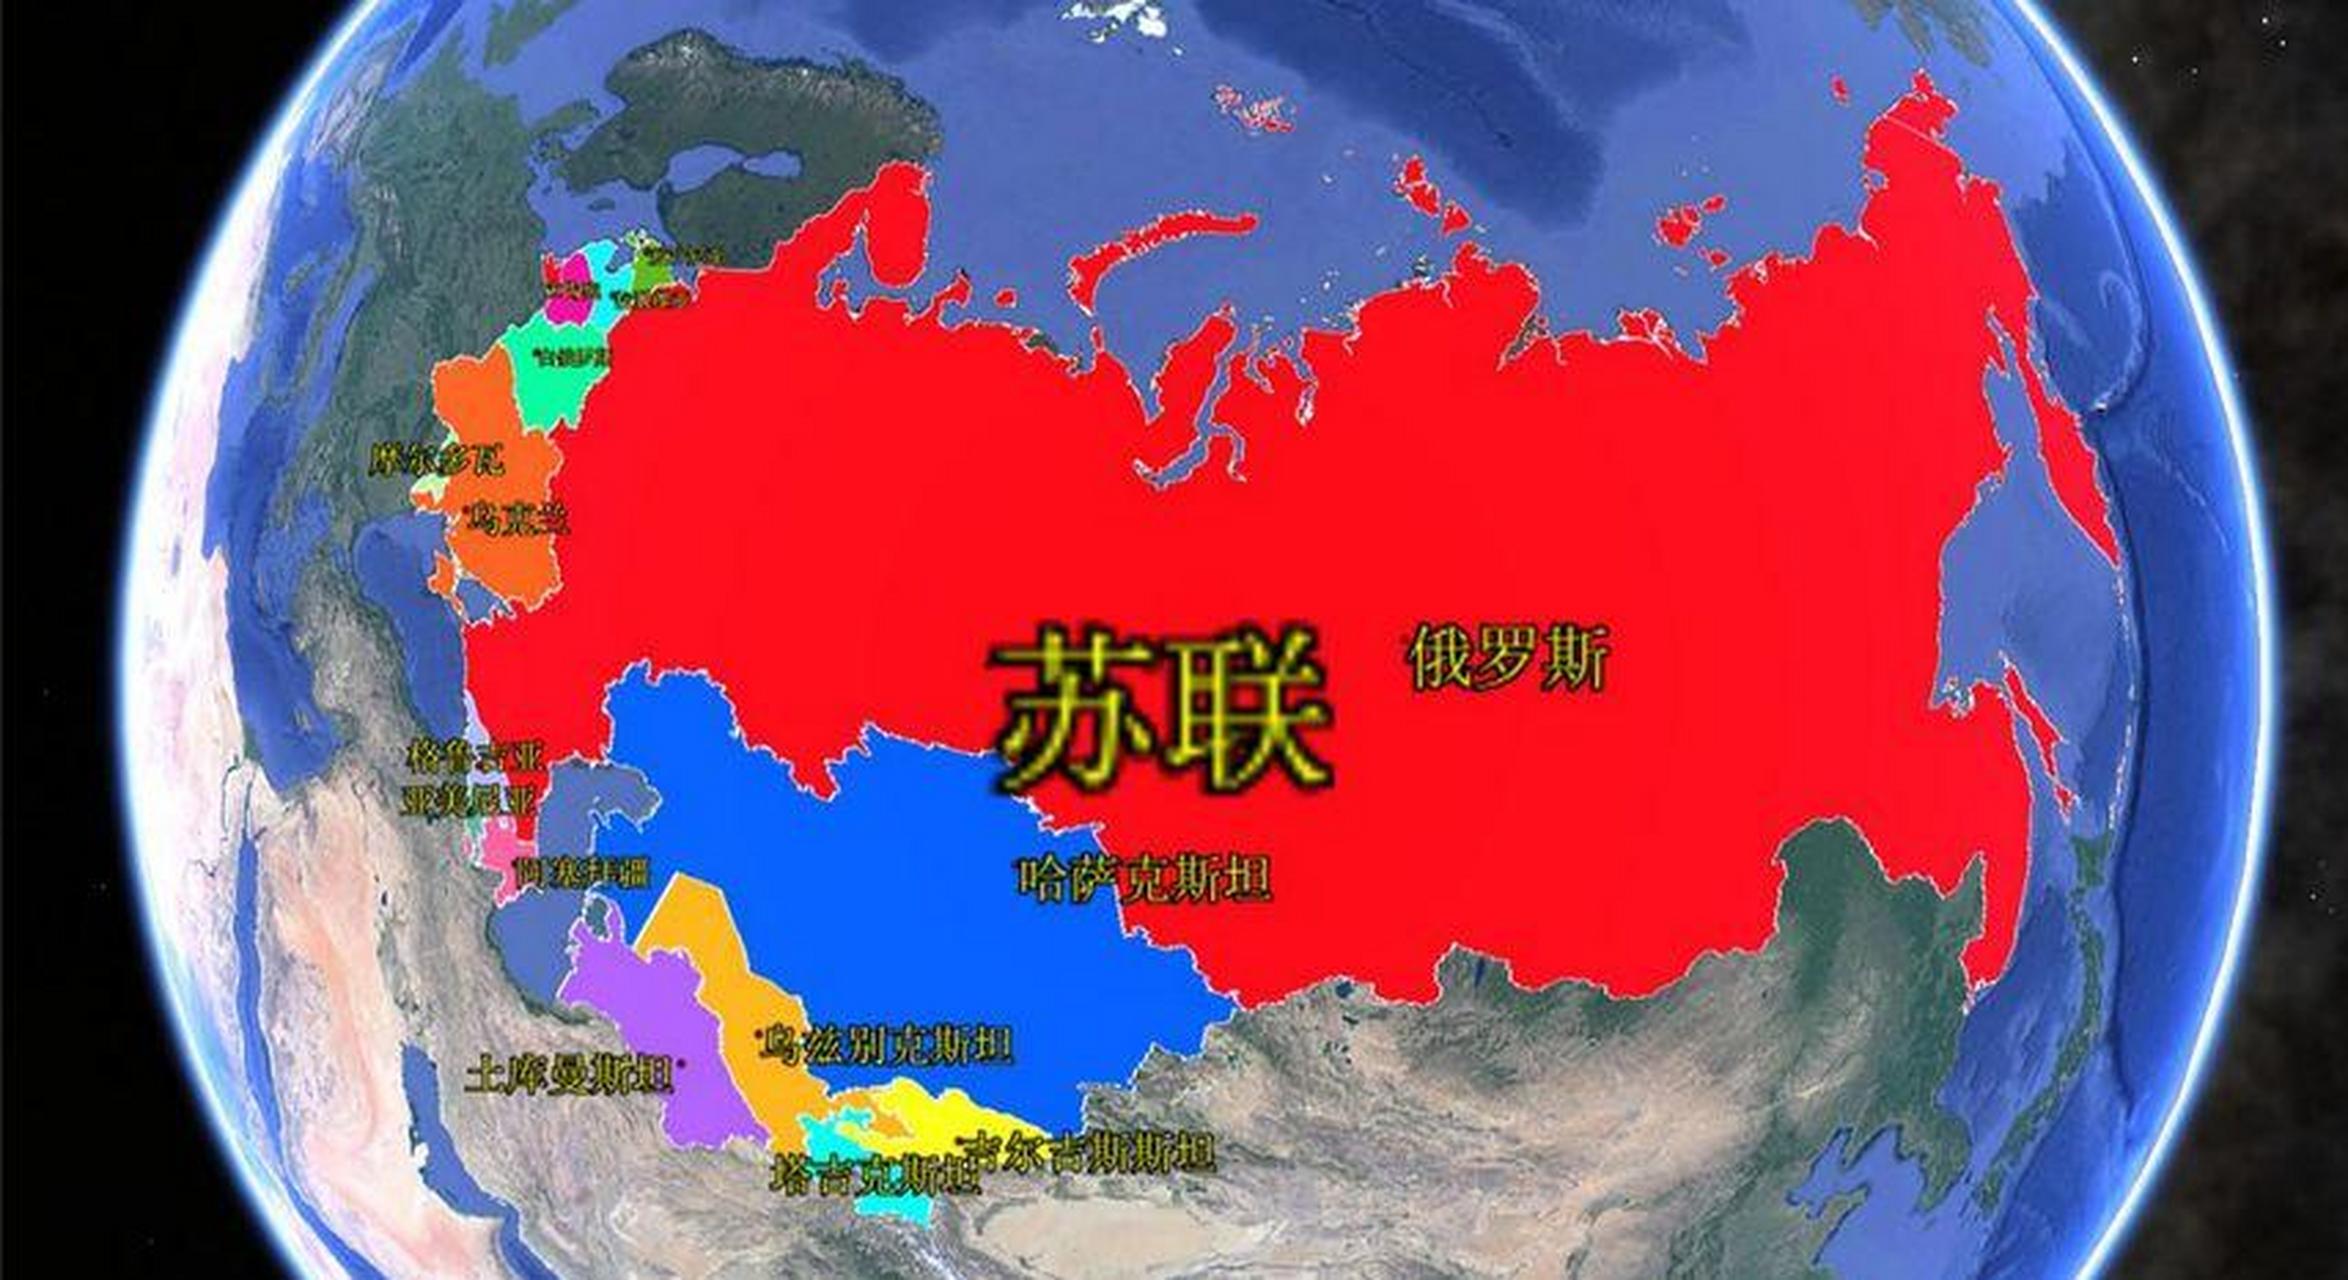 第二张是最大的苏联地图,国土面积2240万平方公里